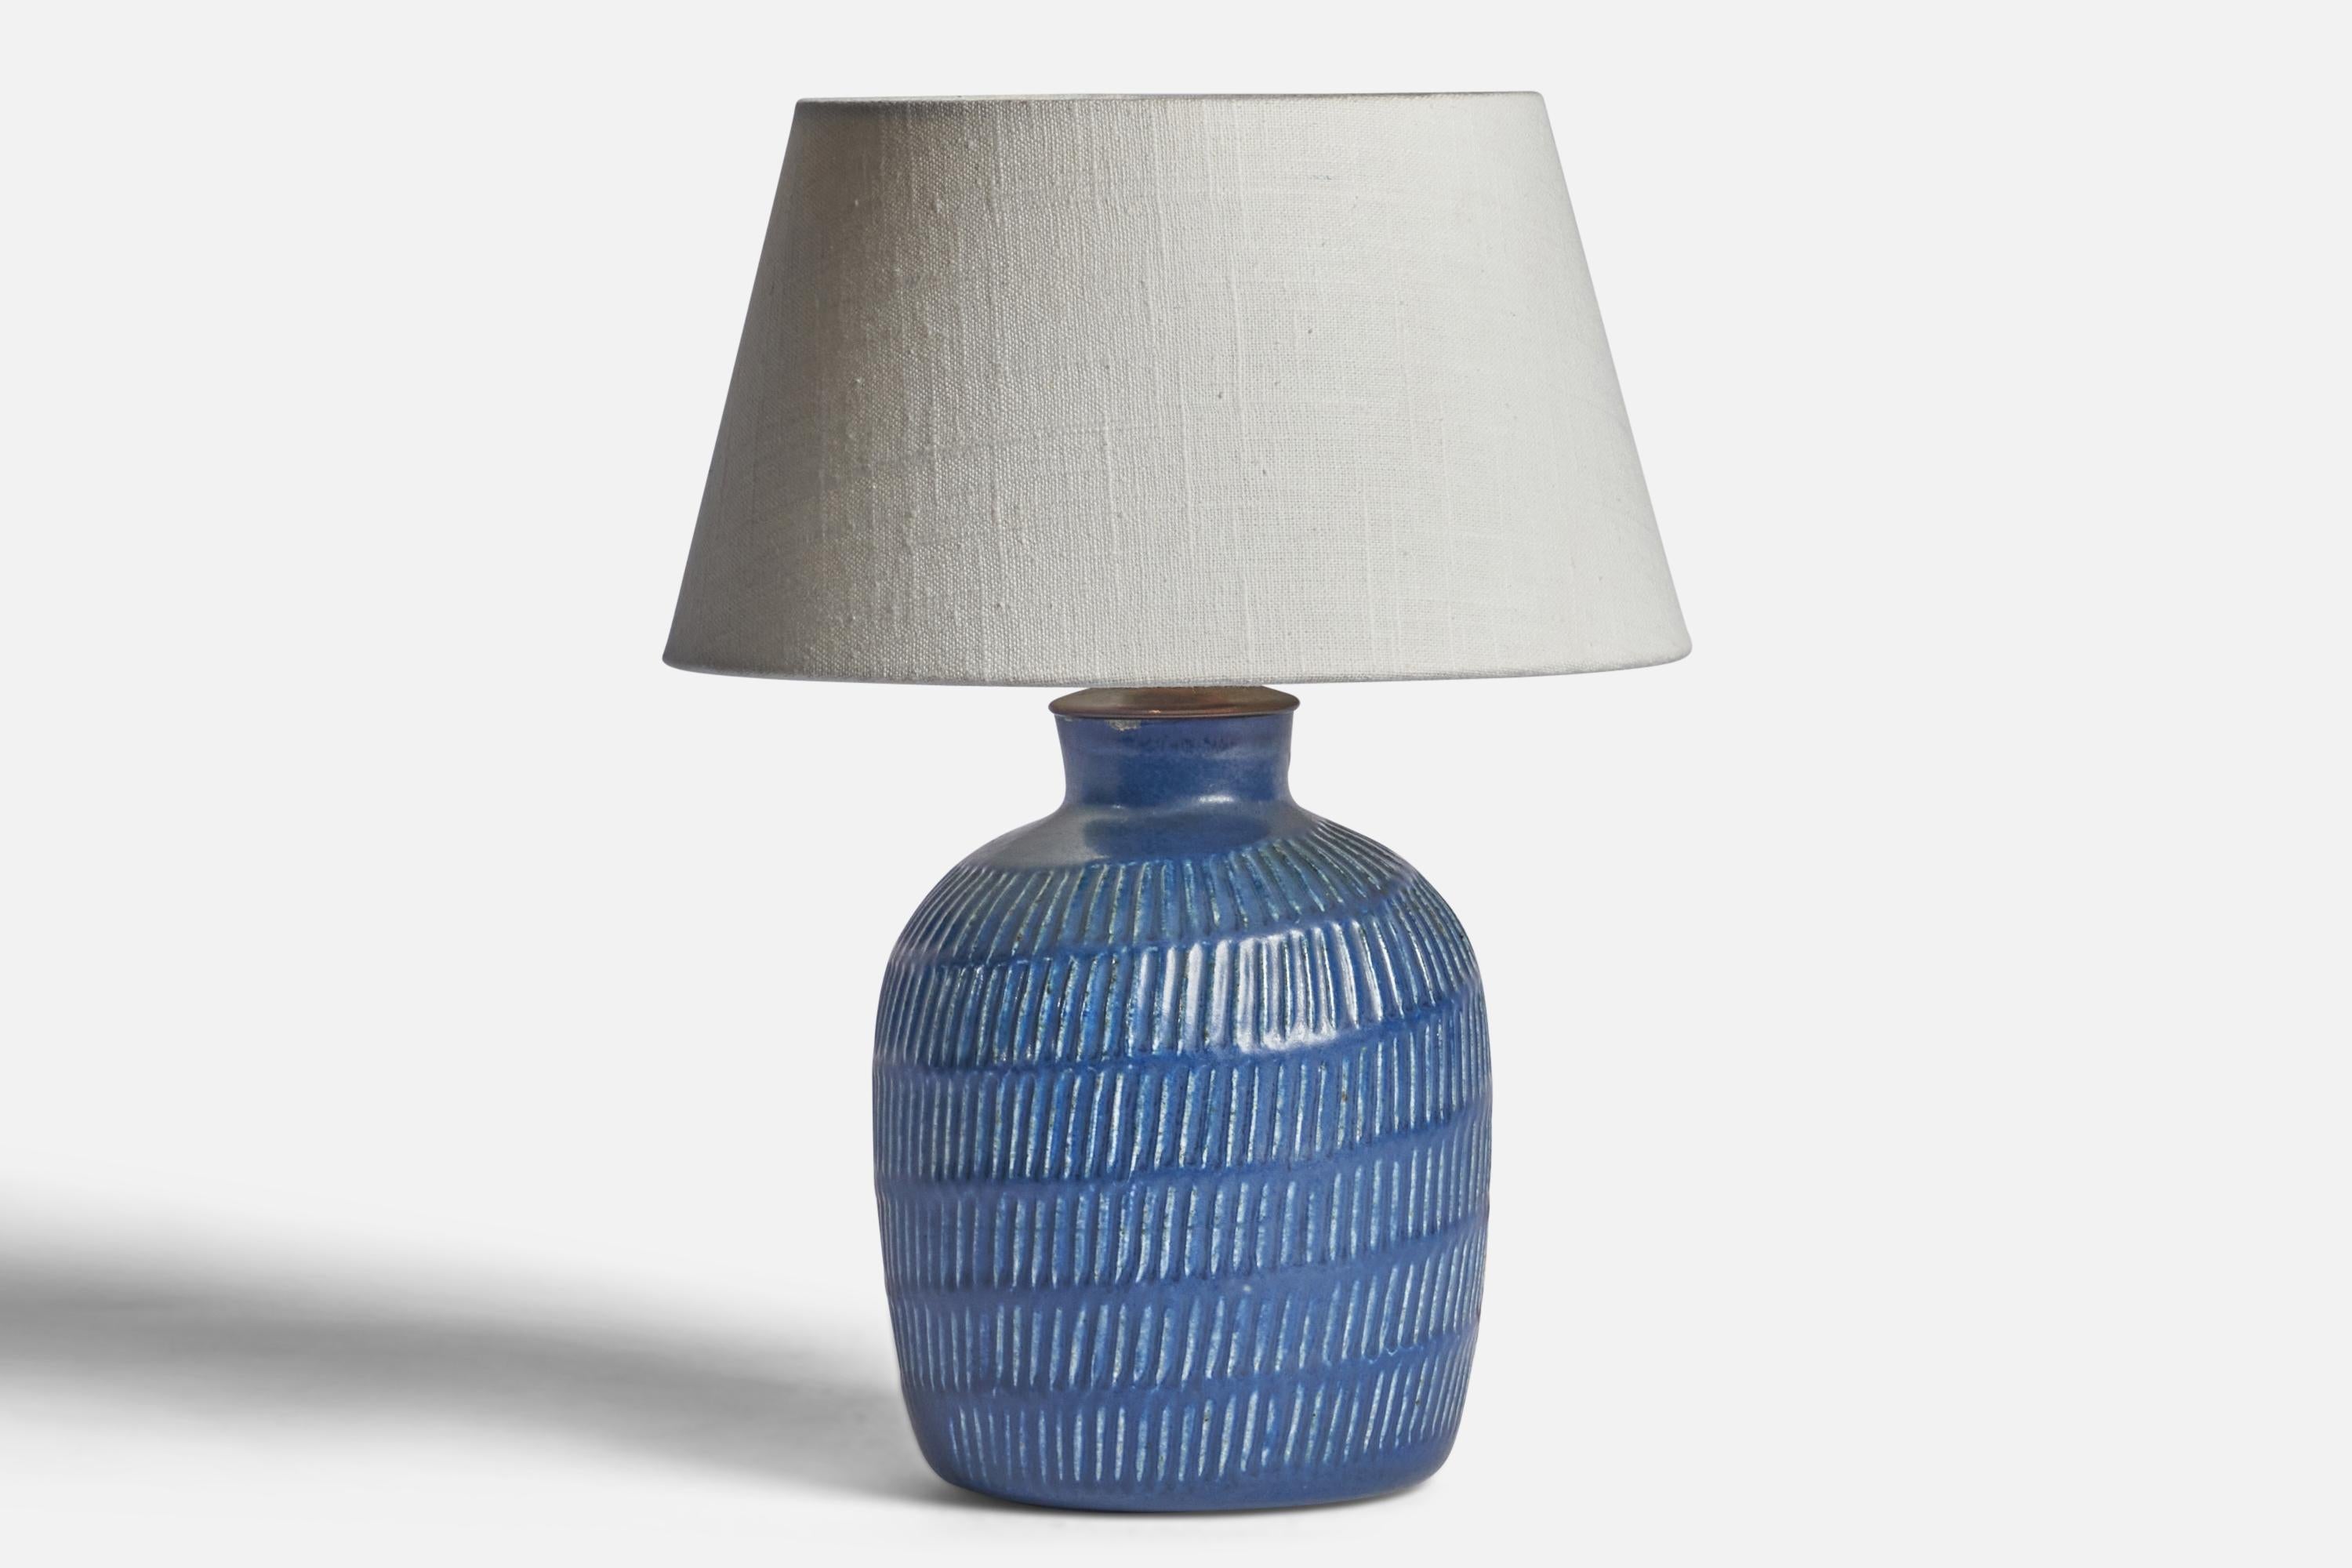 
Lampe de table en grès incisé à glaçure bleue et laiton, conçue par Eva Staehr Nielsen et produite par Saxbo, Danemark, années 1950.
Dimensions de la lampe (pouces) : 10.5